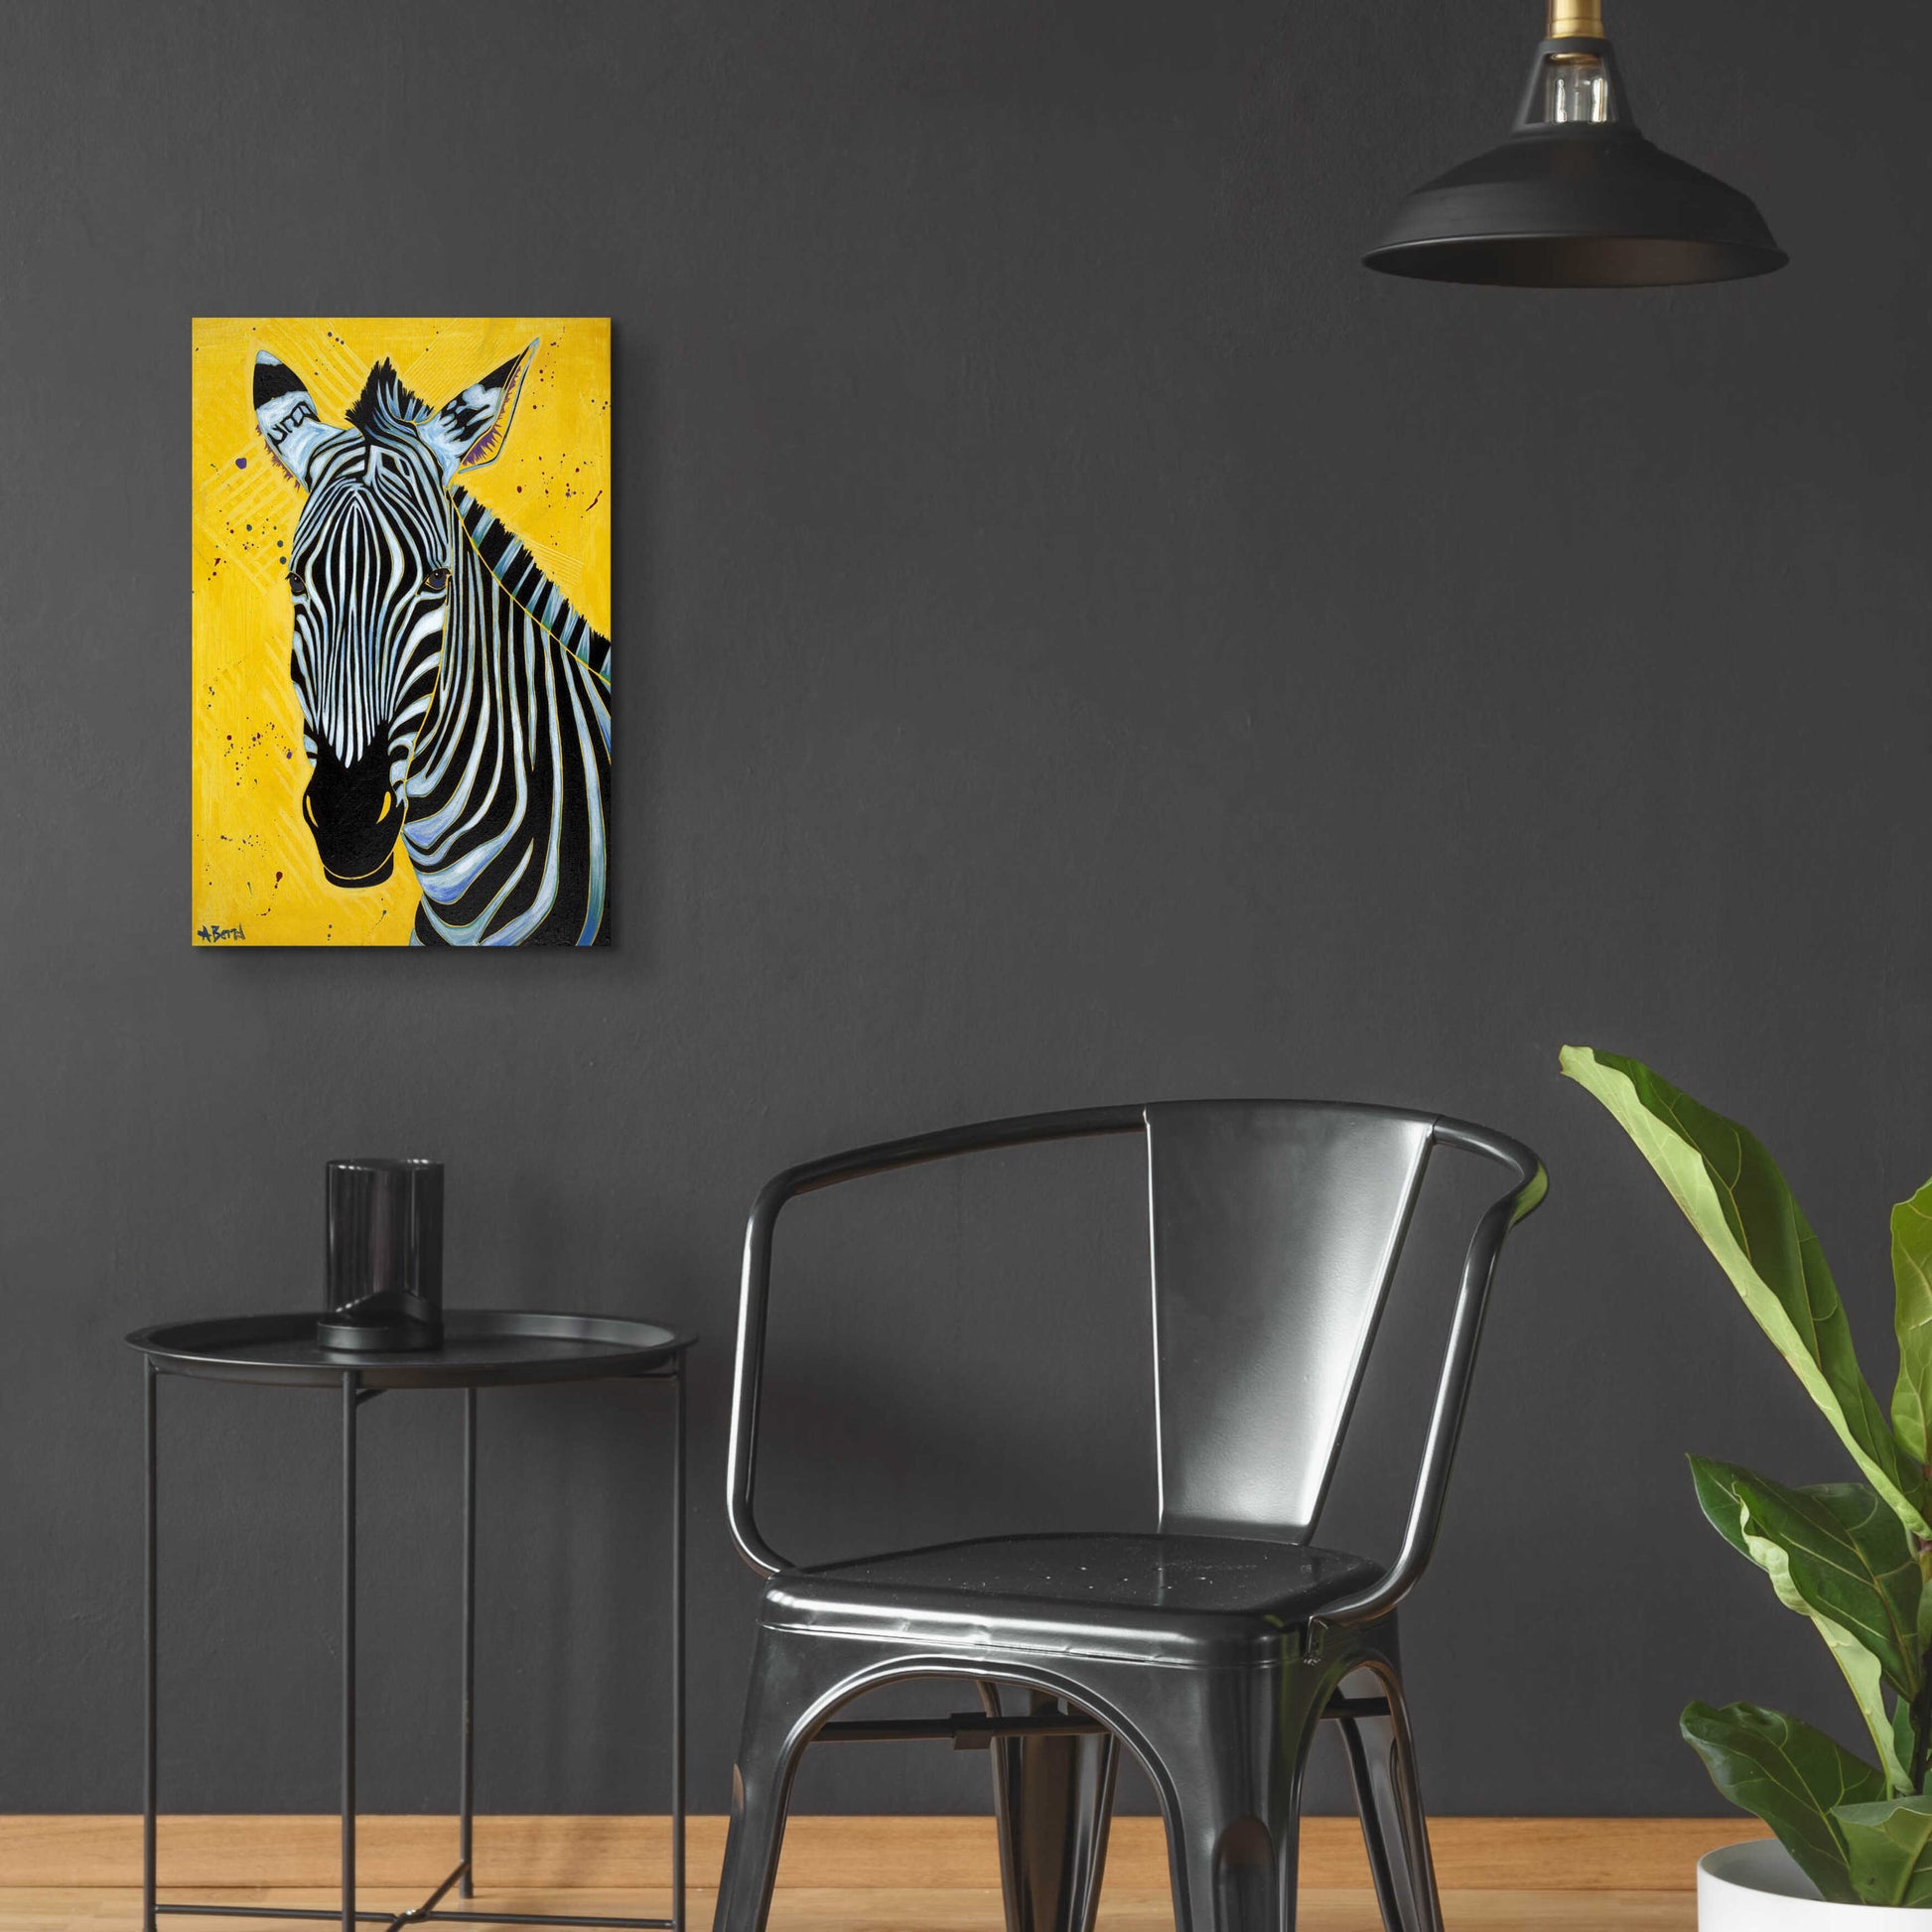 Epic Art 'Zebra' by Angela Bond Acrylic Glass Wall Art,16x24